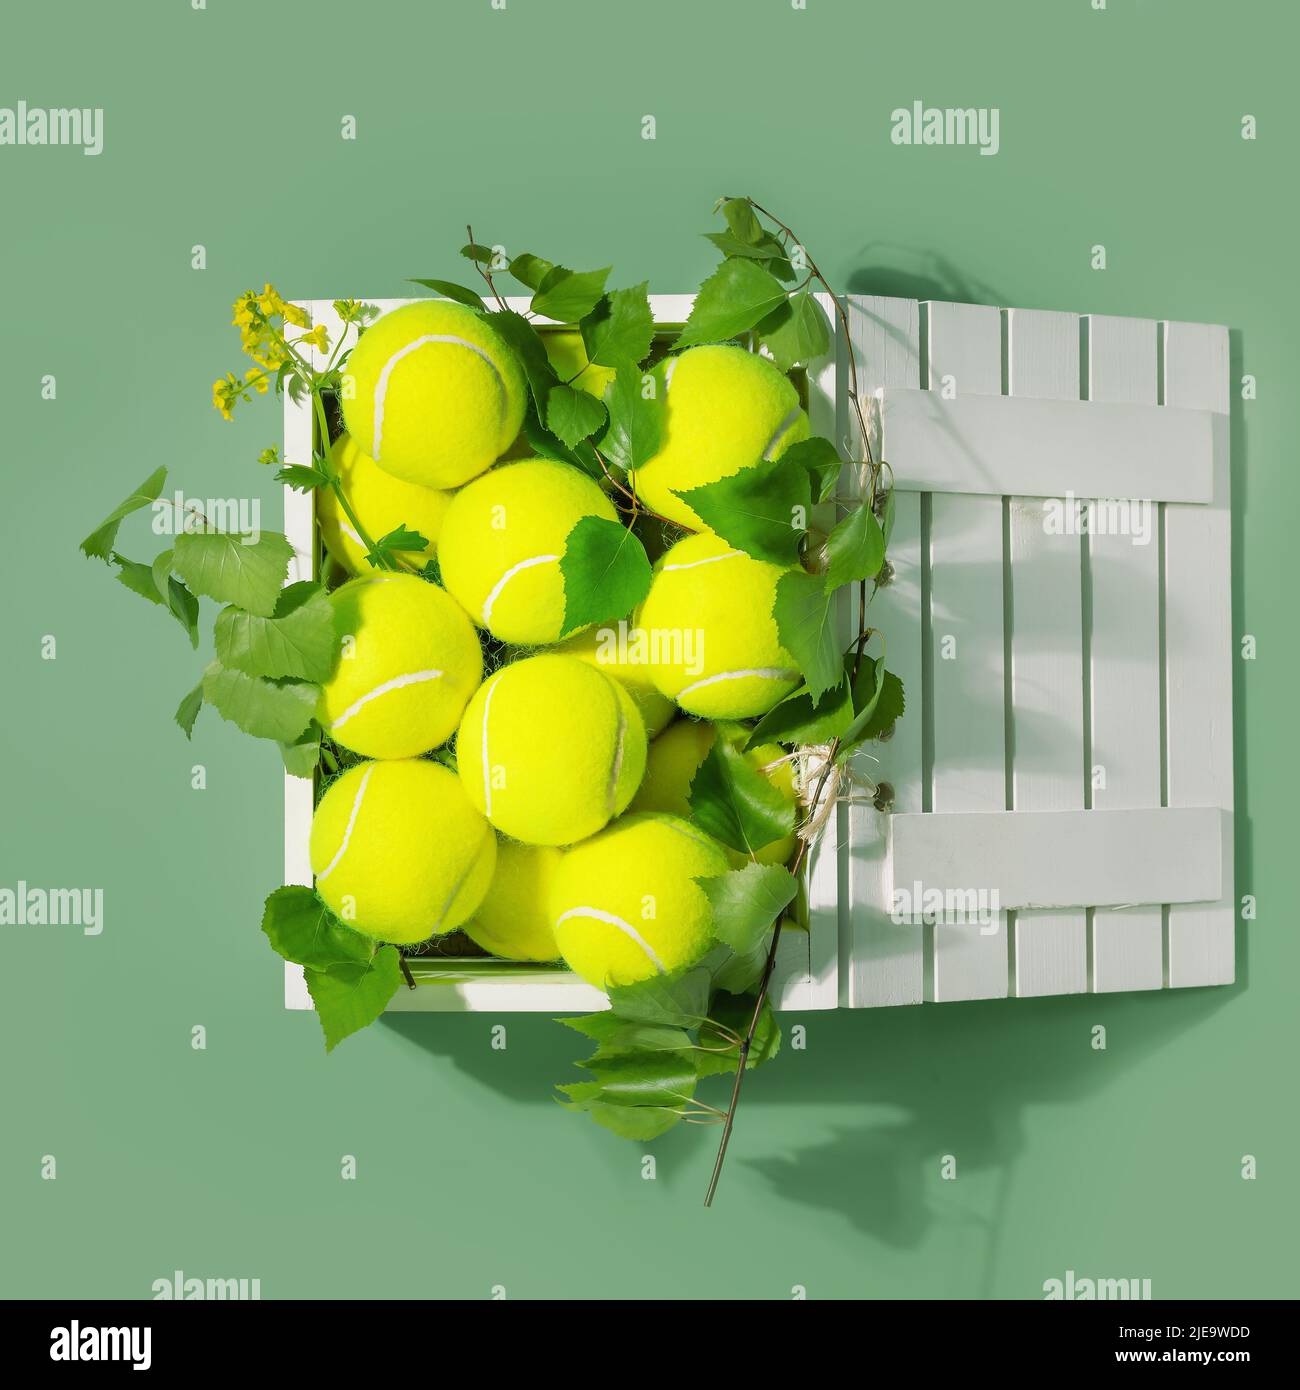 Composizione tennis con palline da tennis gialle in una scatola bianca di legno con rami verdi su sfondo verde. Estate, gara di tennis. Disposizione piatta Foto Stock